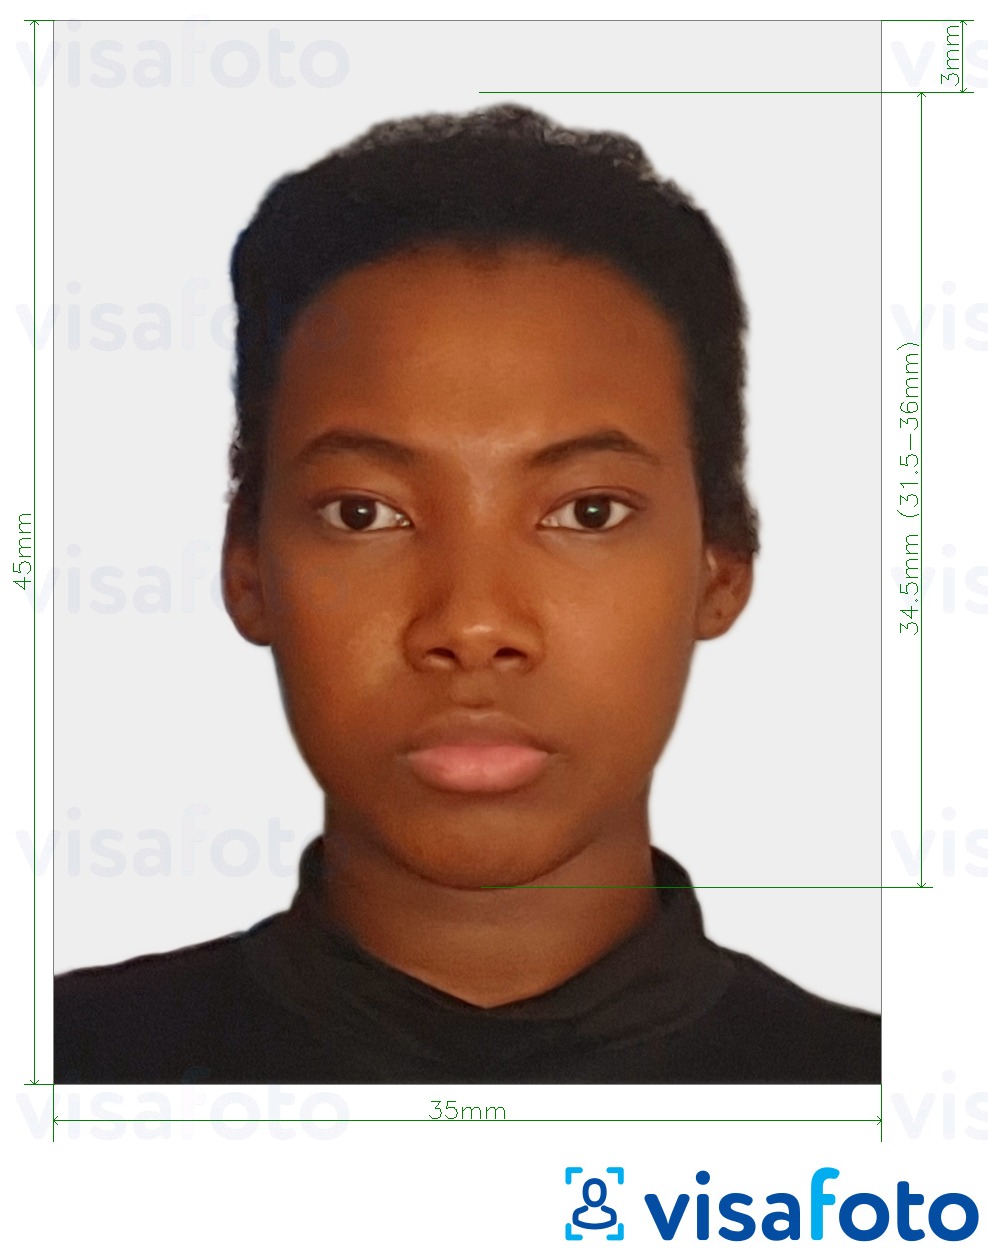 सटीक आकार विनिर्देश के साथ ज़िम्बाब्वे वीज़ा फोटो 35x45 मिमी (3.5x4.5 सेमी) के लिए तस्वीर का उदाहरण